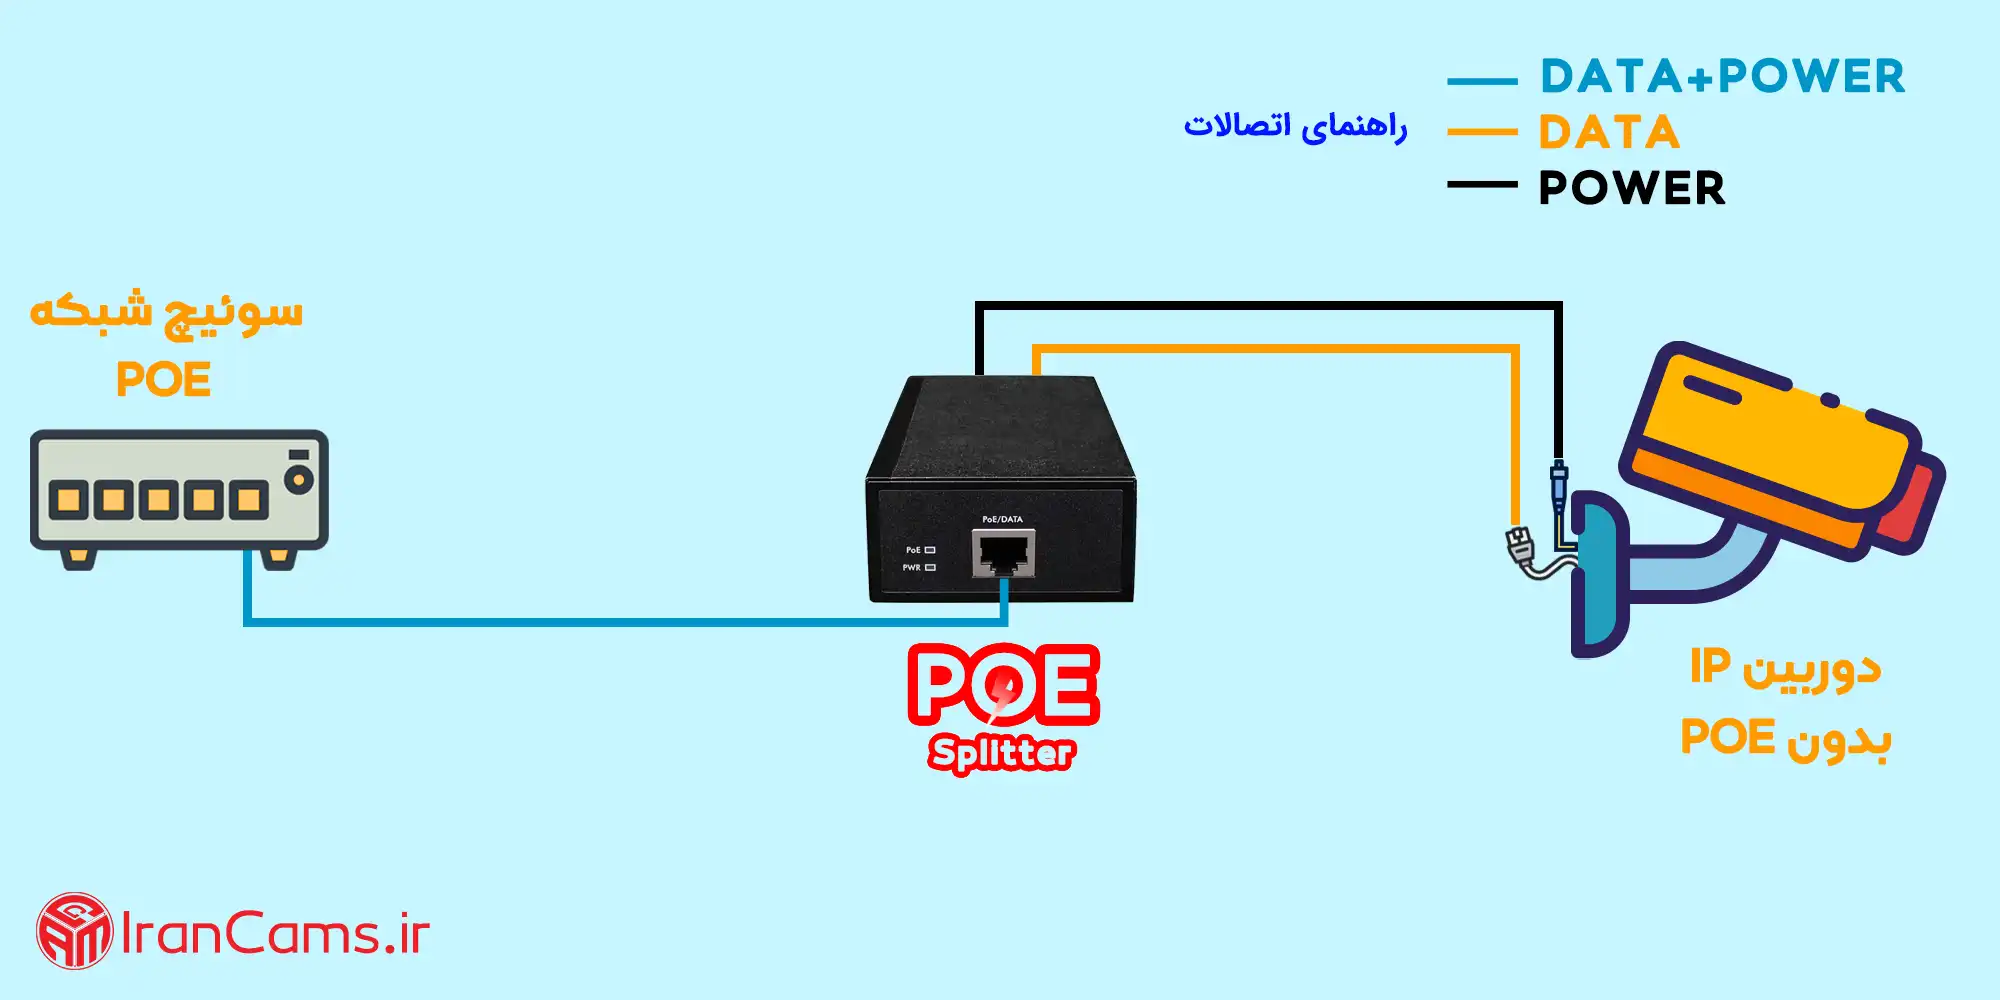 اسپلیتر POE اینجکتور POE اسپلیتر شبکه سوئیچ POE دوربین POE irancams.ir